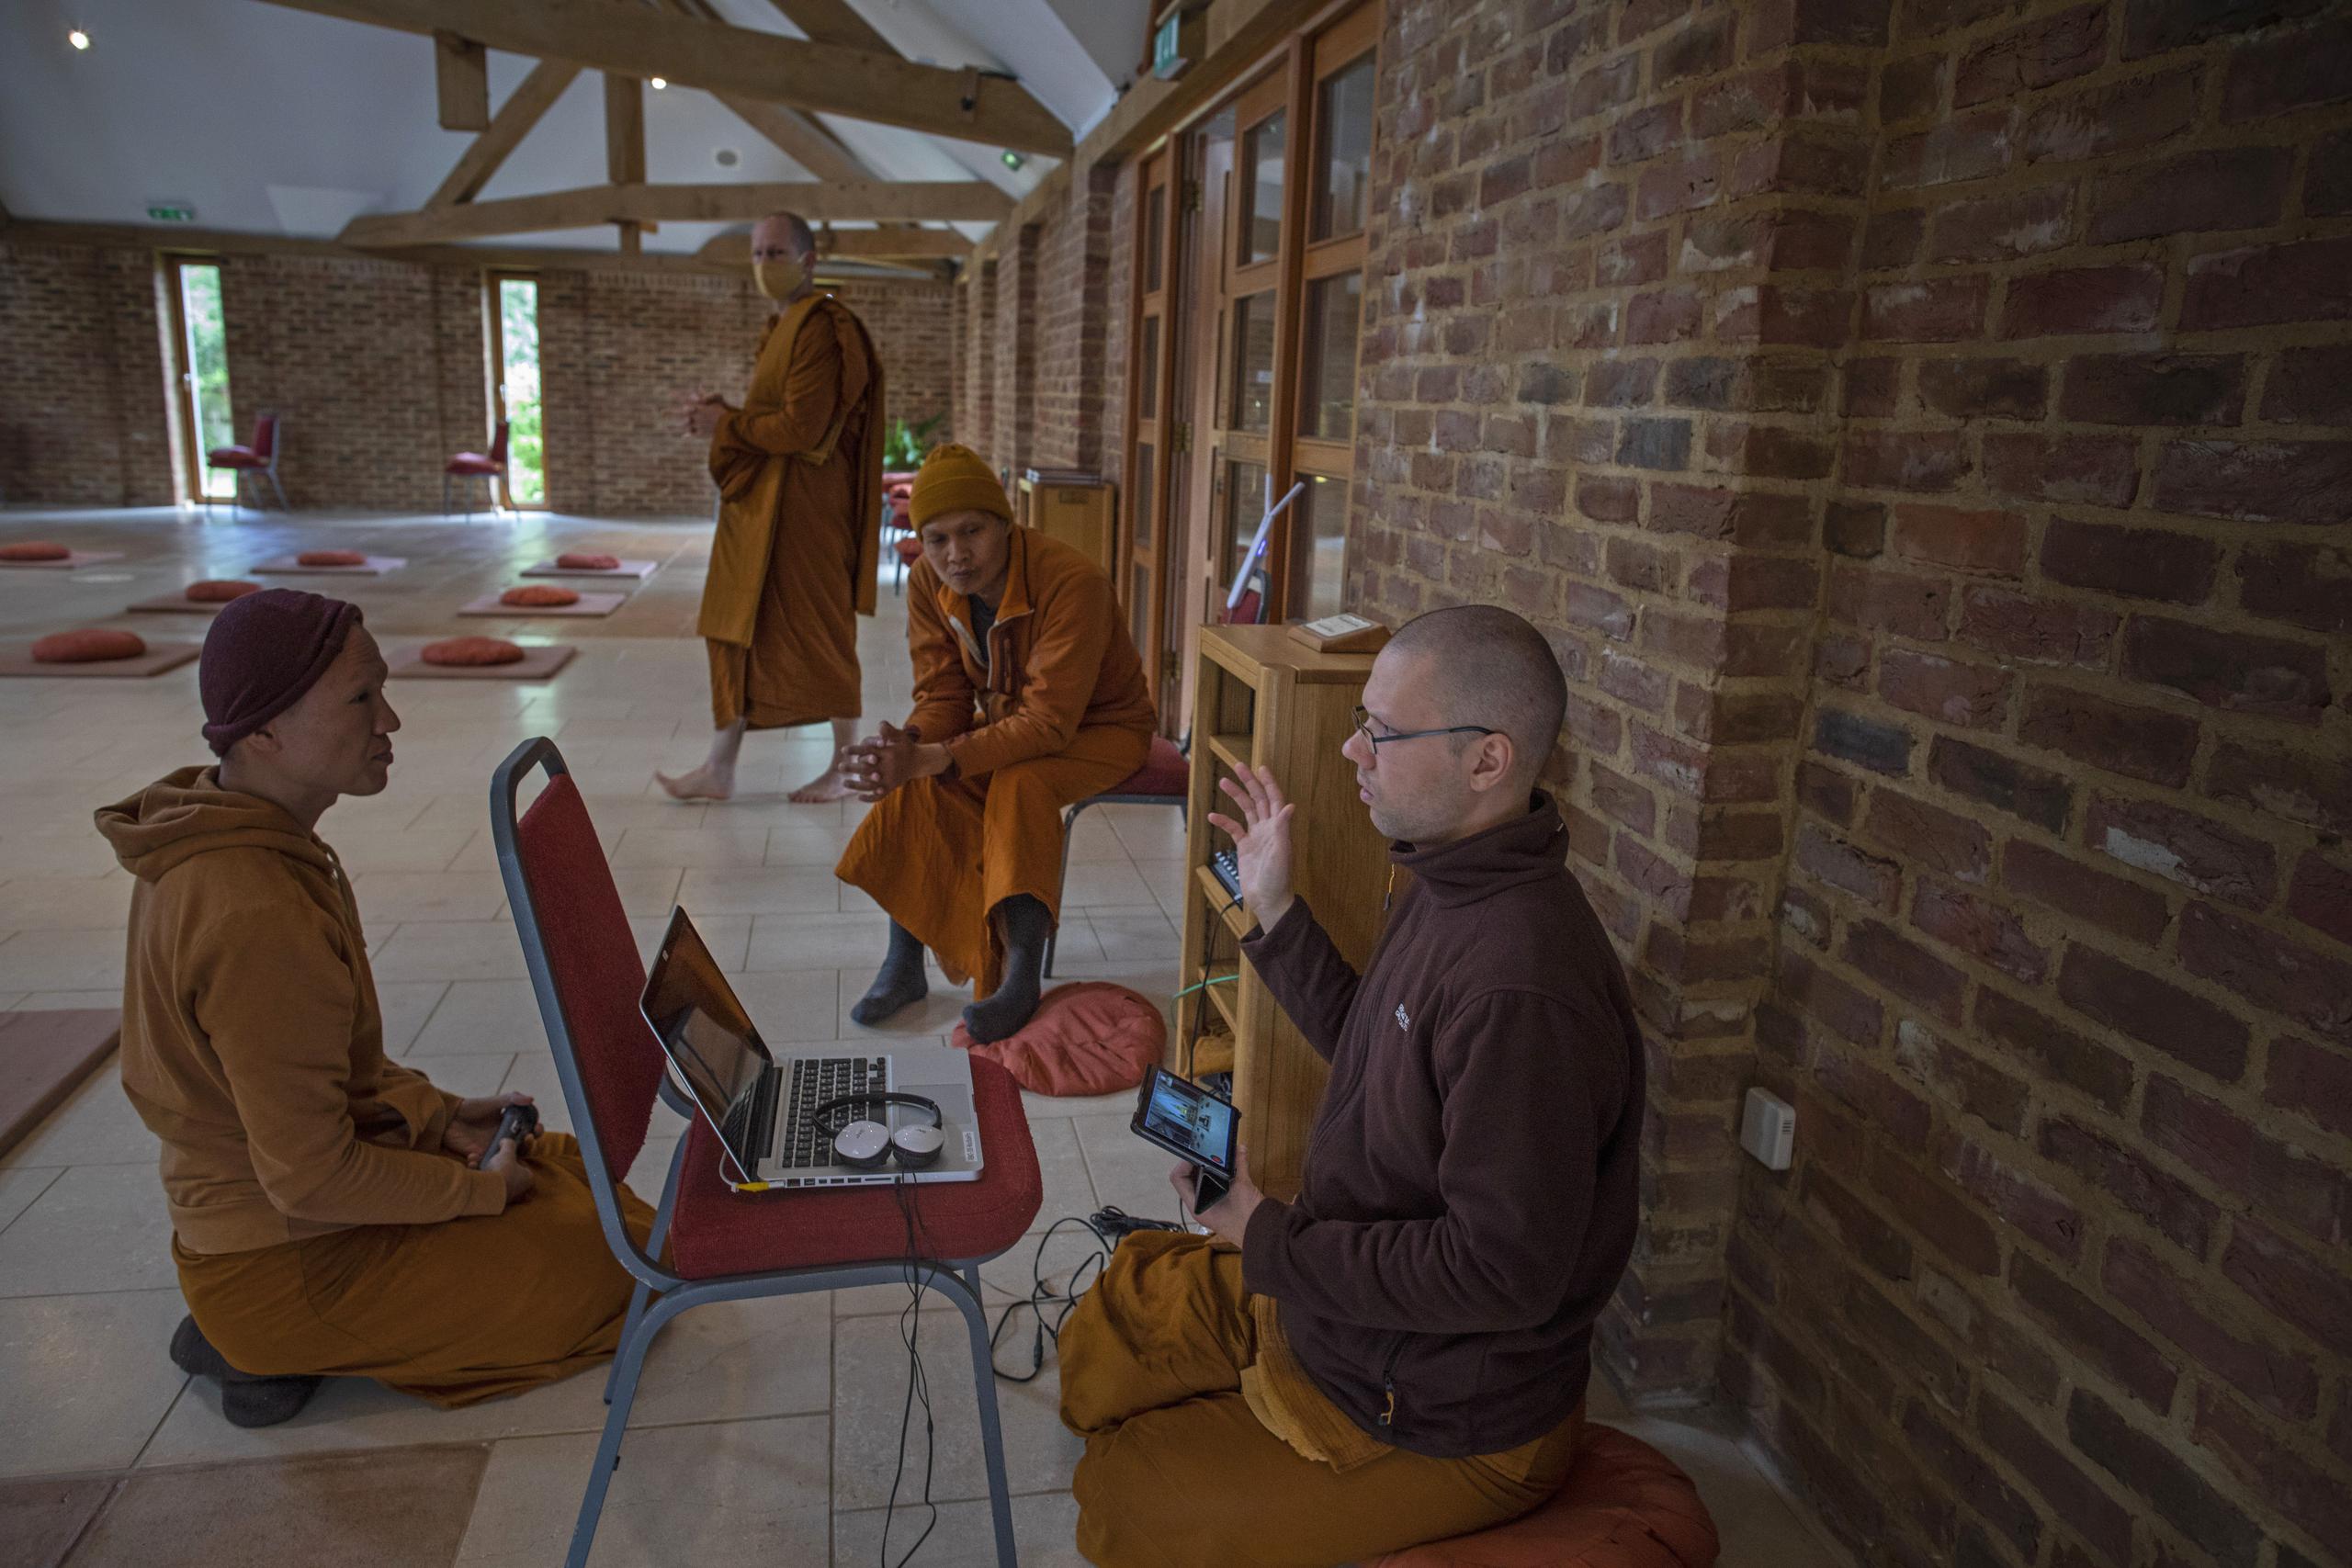 Los monjes Ajahn Kongrit, derecha, Tan Jalito, izquierda, y Tan Narindo analizan la logística del streaming en vivo de la ceremonia del Día de la Luna desde el templo budista Amvrati cerrado al público debido a la pandemia, en Great Gaddesden, Inglaterra